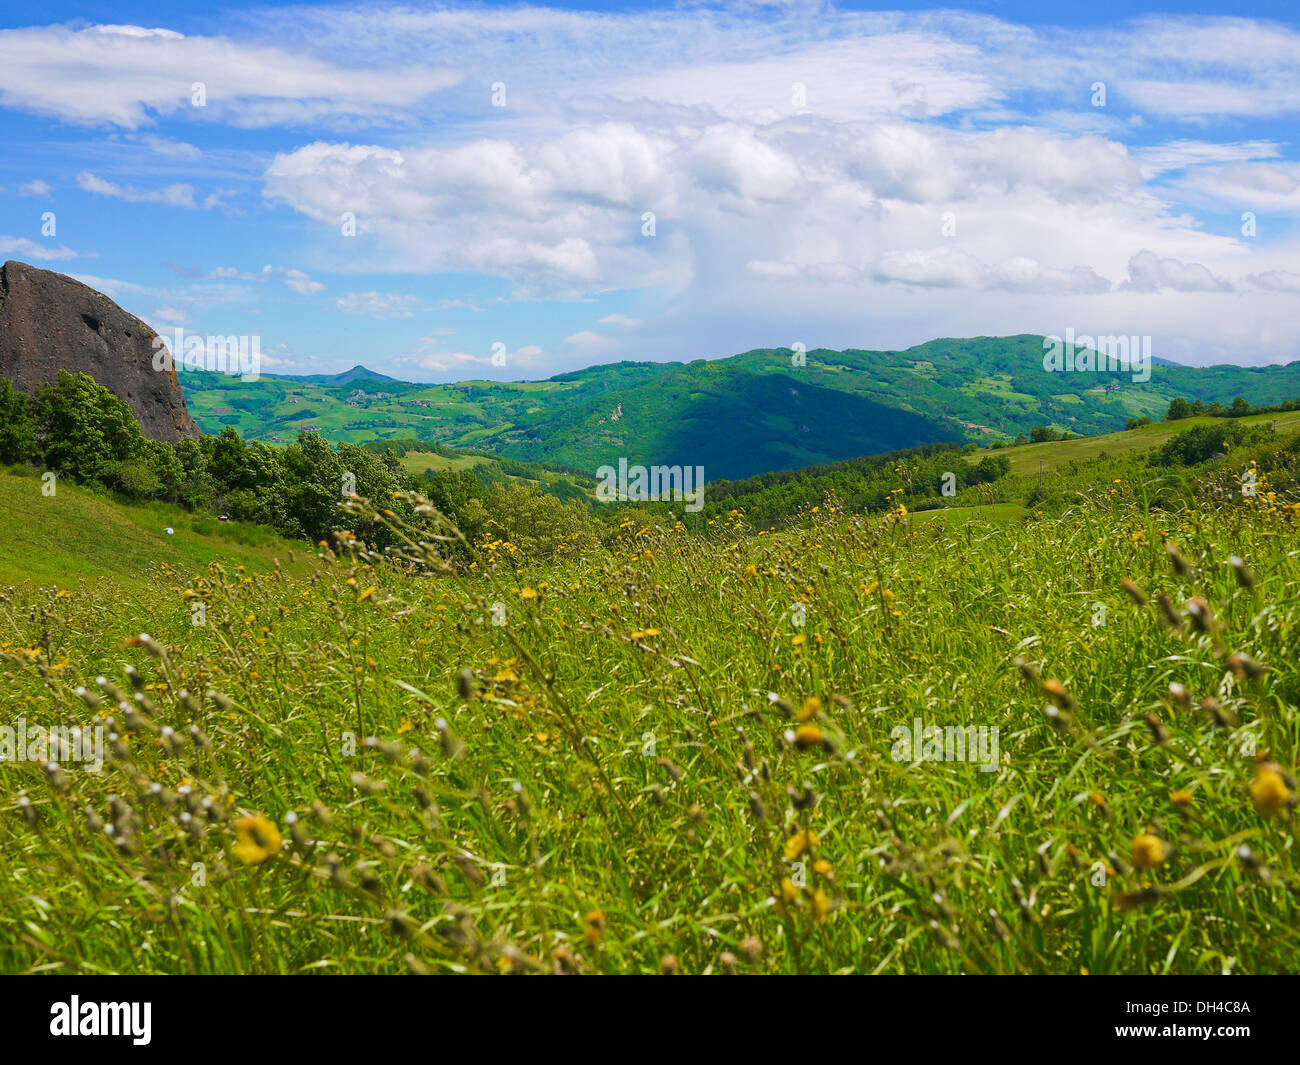 Spring landscape in Val Trebbia, Piacenza, Italy Stock Photo